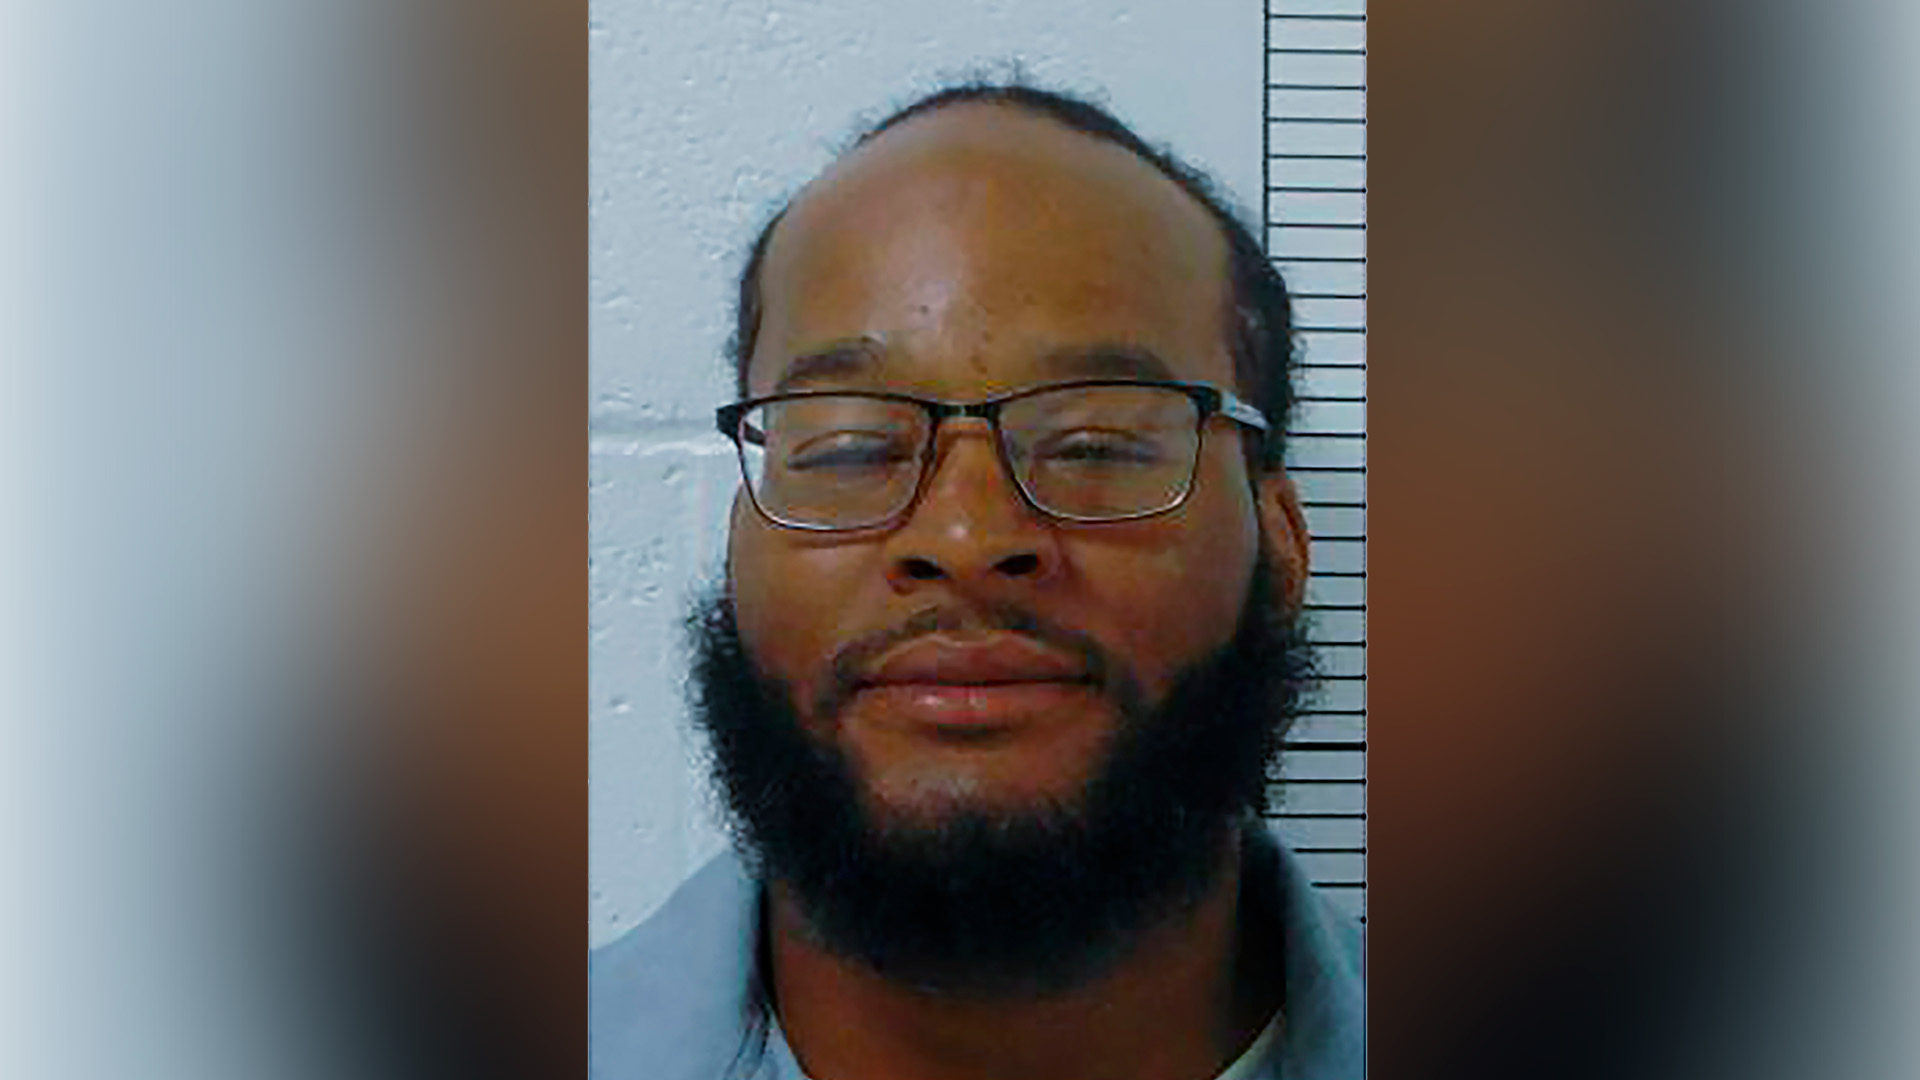 Esta foto proporcionada por el Departamento Correccional de Missouri muestra a Kevin Johnson, sentenciado por matar al oficial de policía William McEntee en Kirkwood, Missouri, en 2005. (Departamento de Correccionales de Missouri vía AP)

